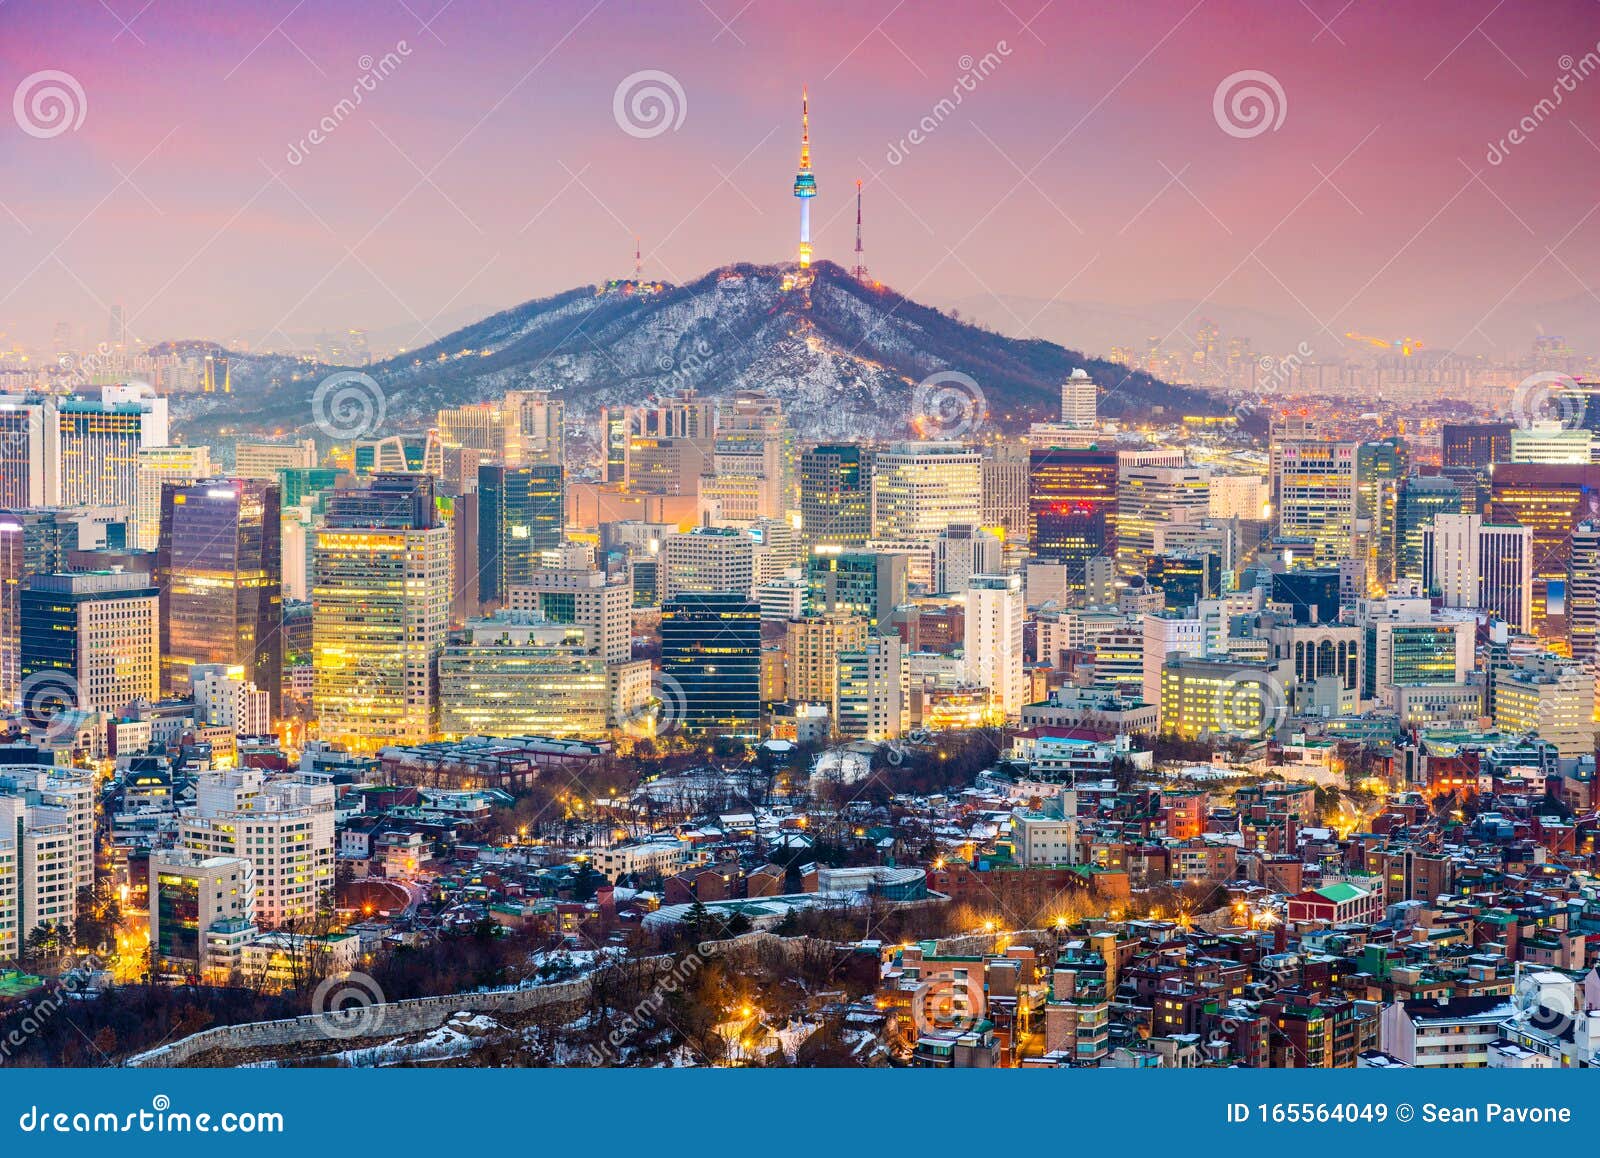 韩国城市美景高清动态壁纸 - 哔哩哔哩